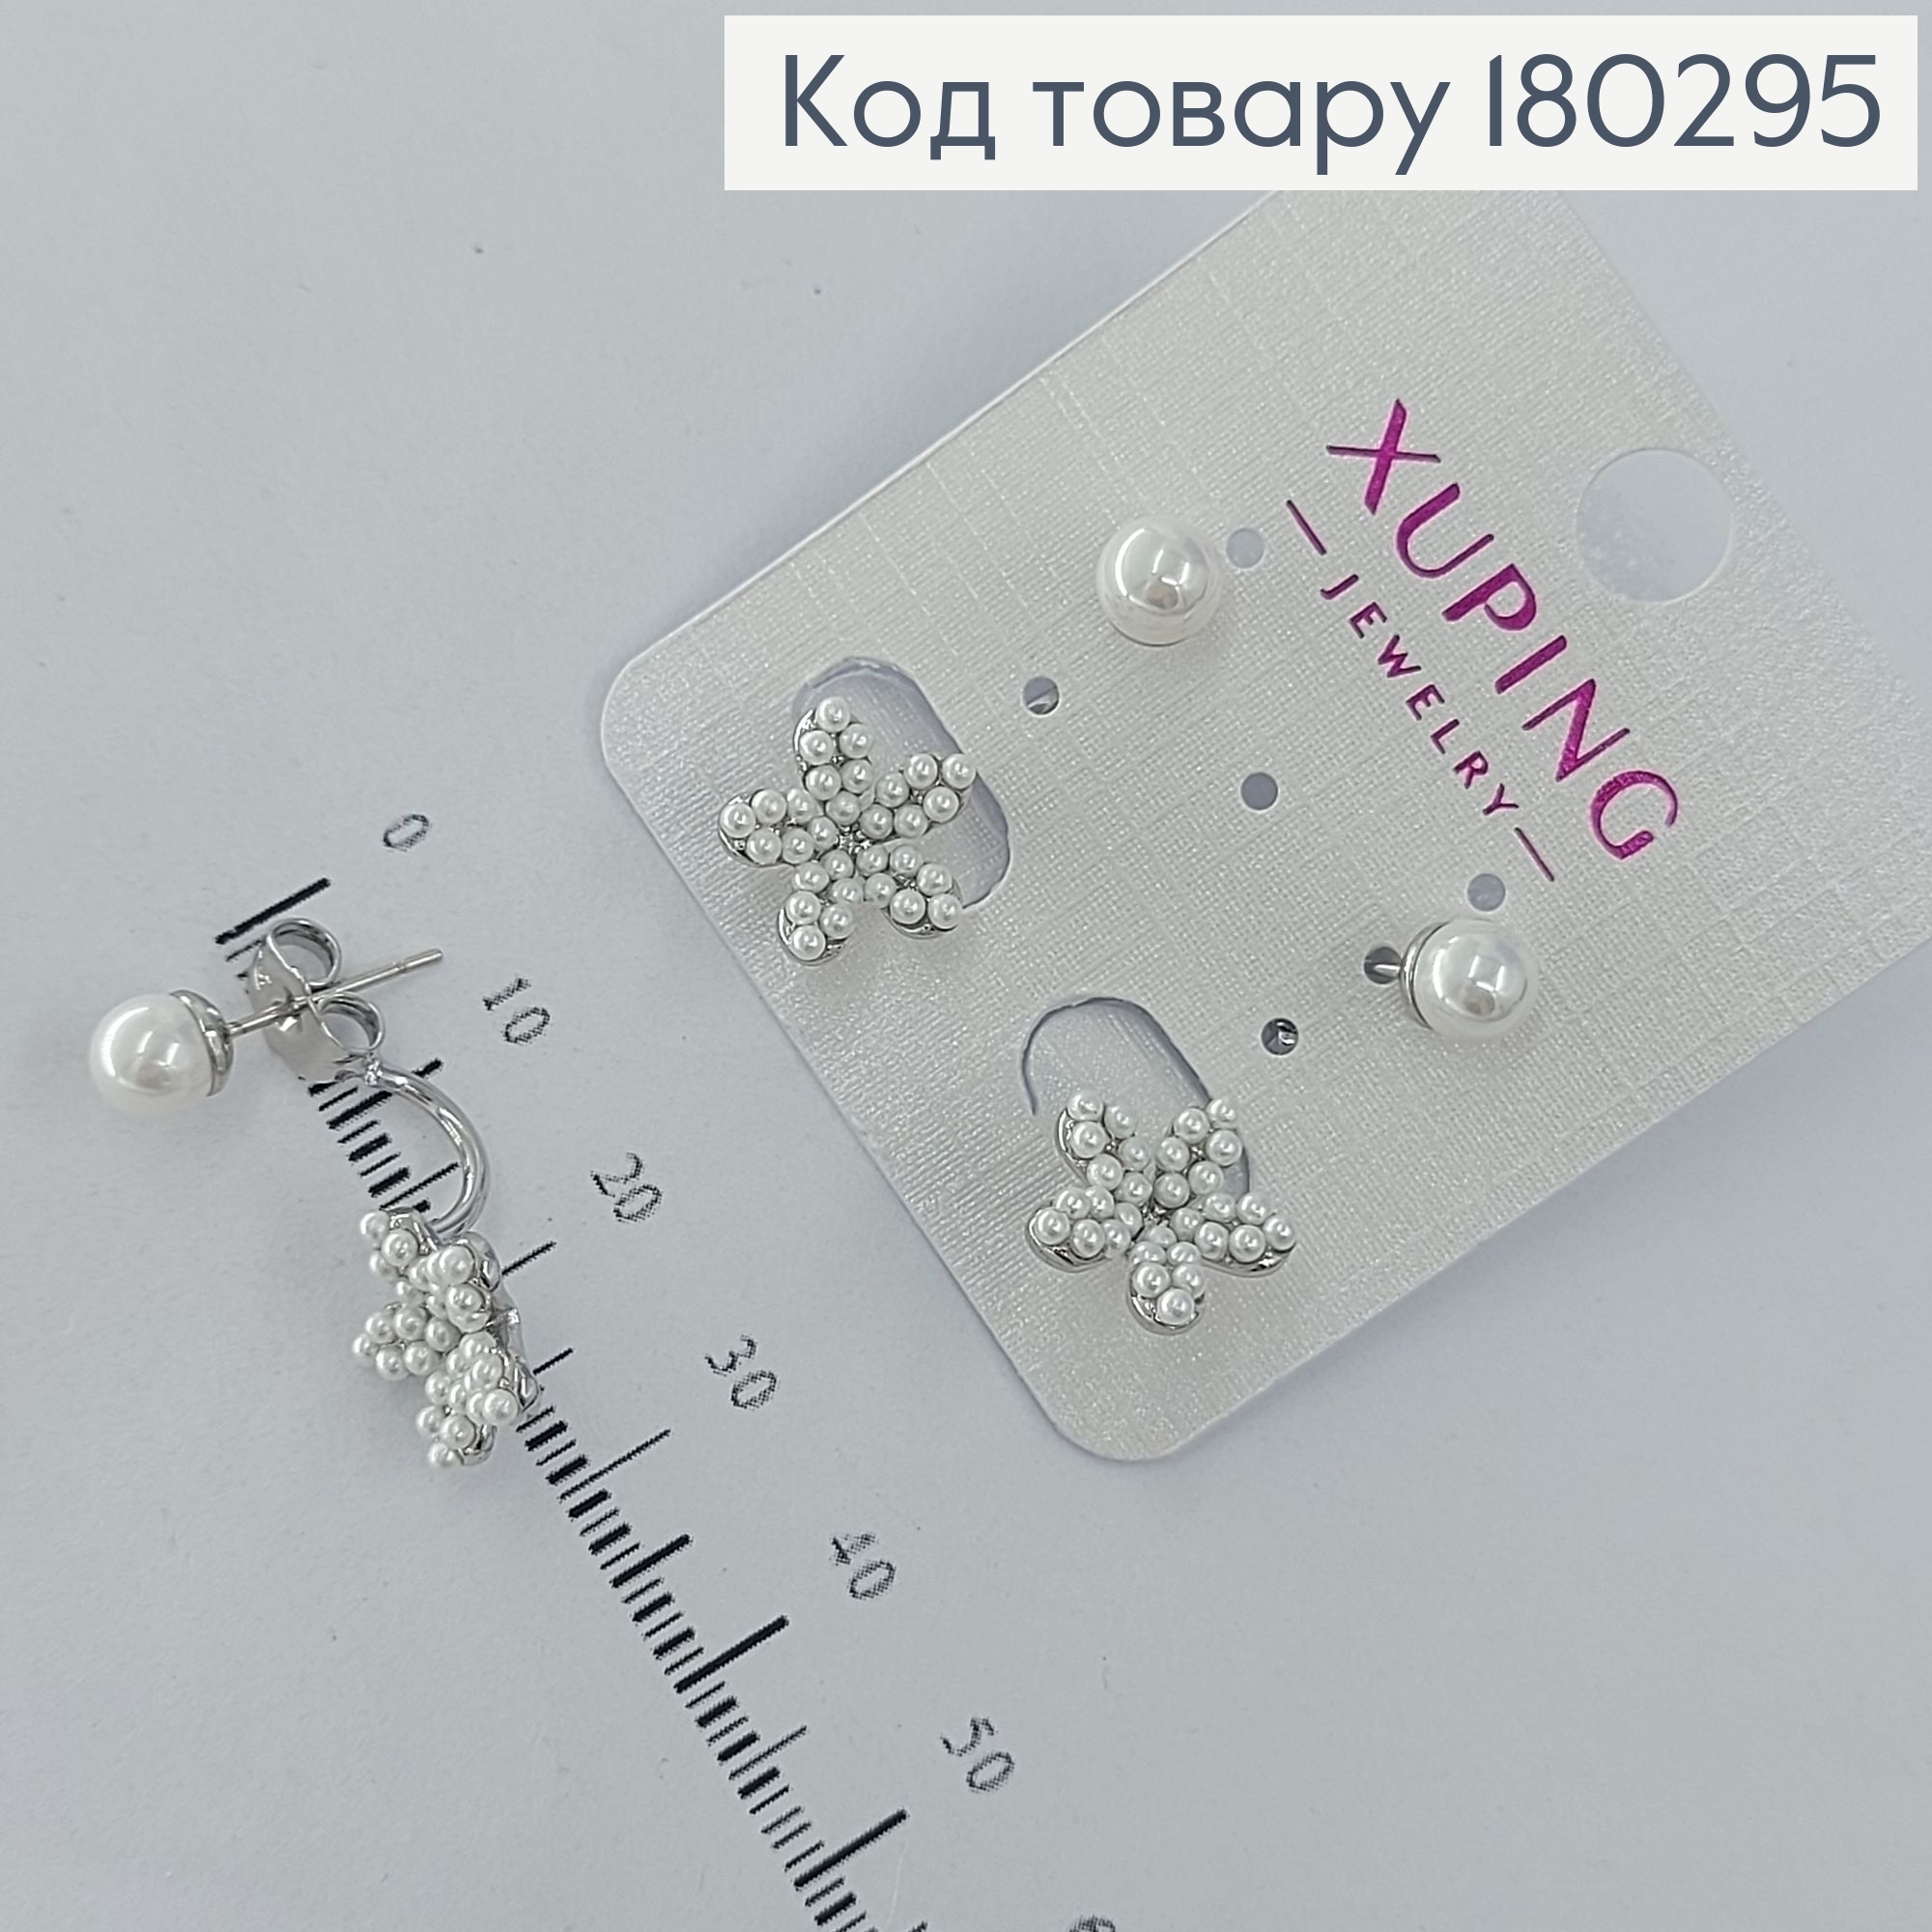 Сережки гвіздки на дві дирки квіточка з перлинкою  родіроване медзолото Xuping 180295 фото 2